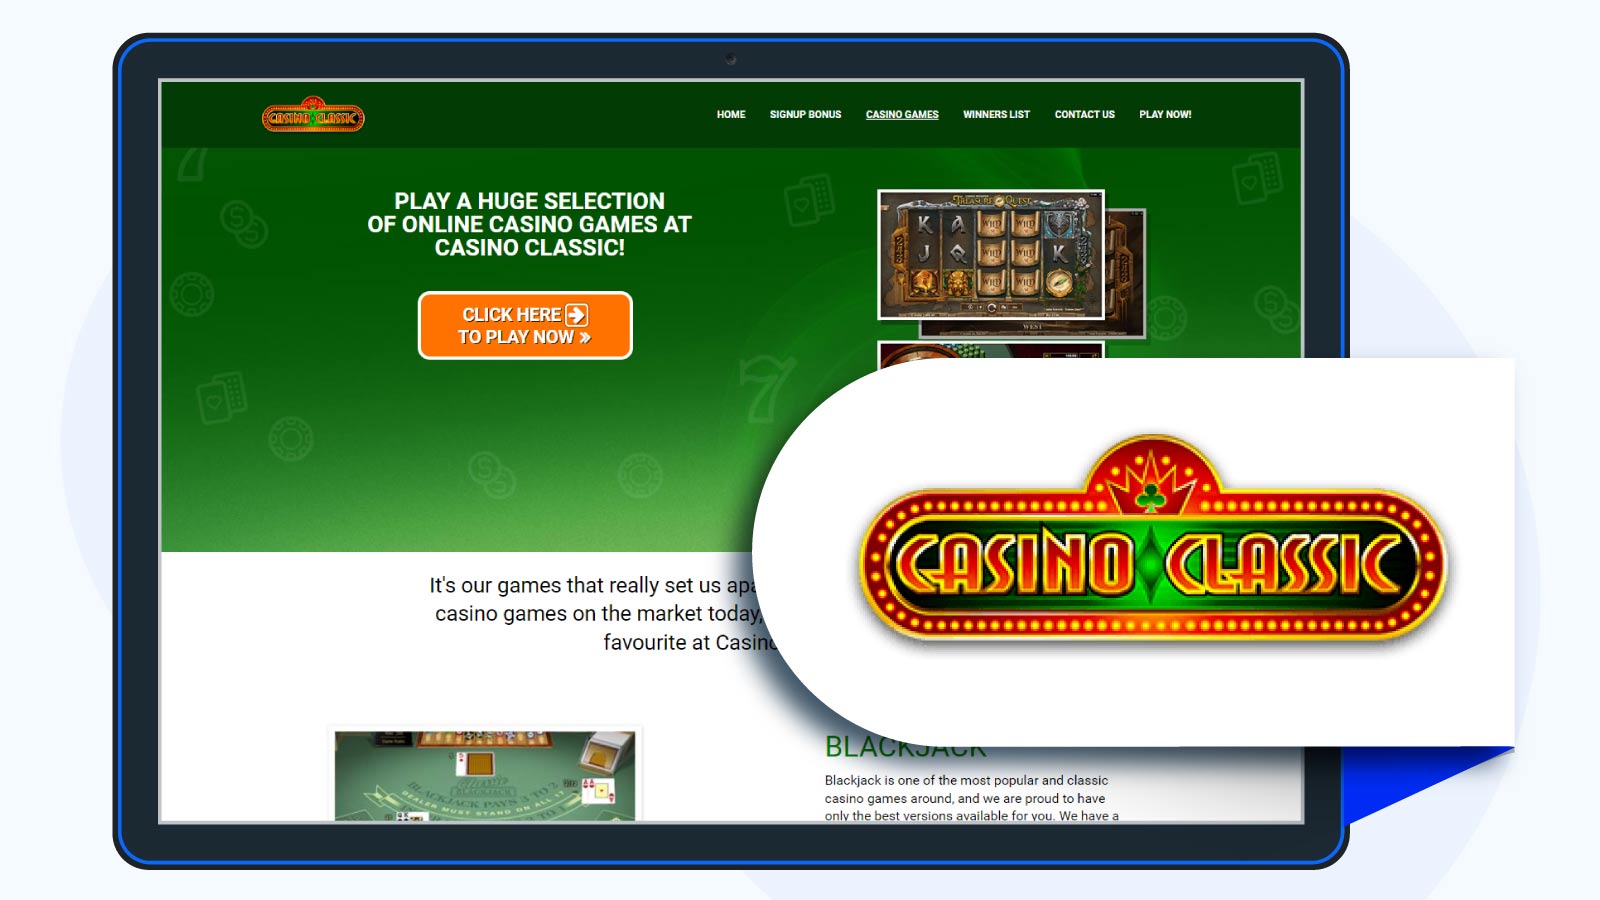 Casino Classic casino homepage